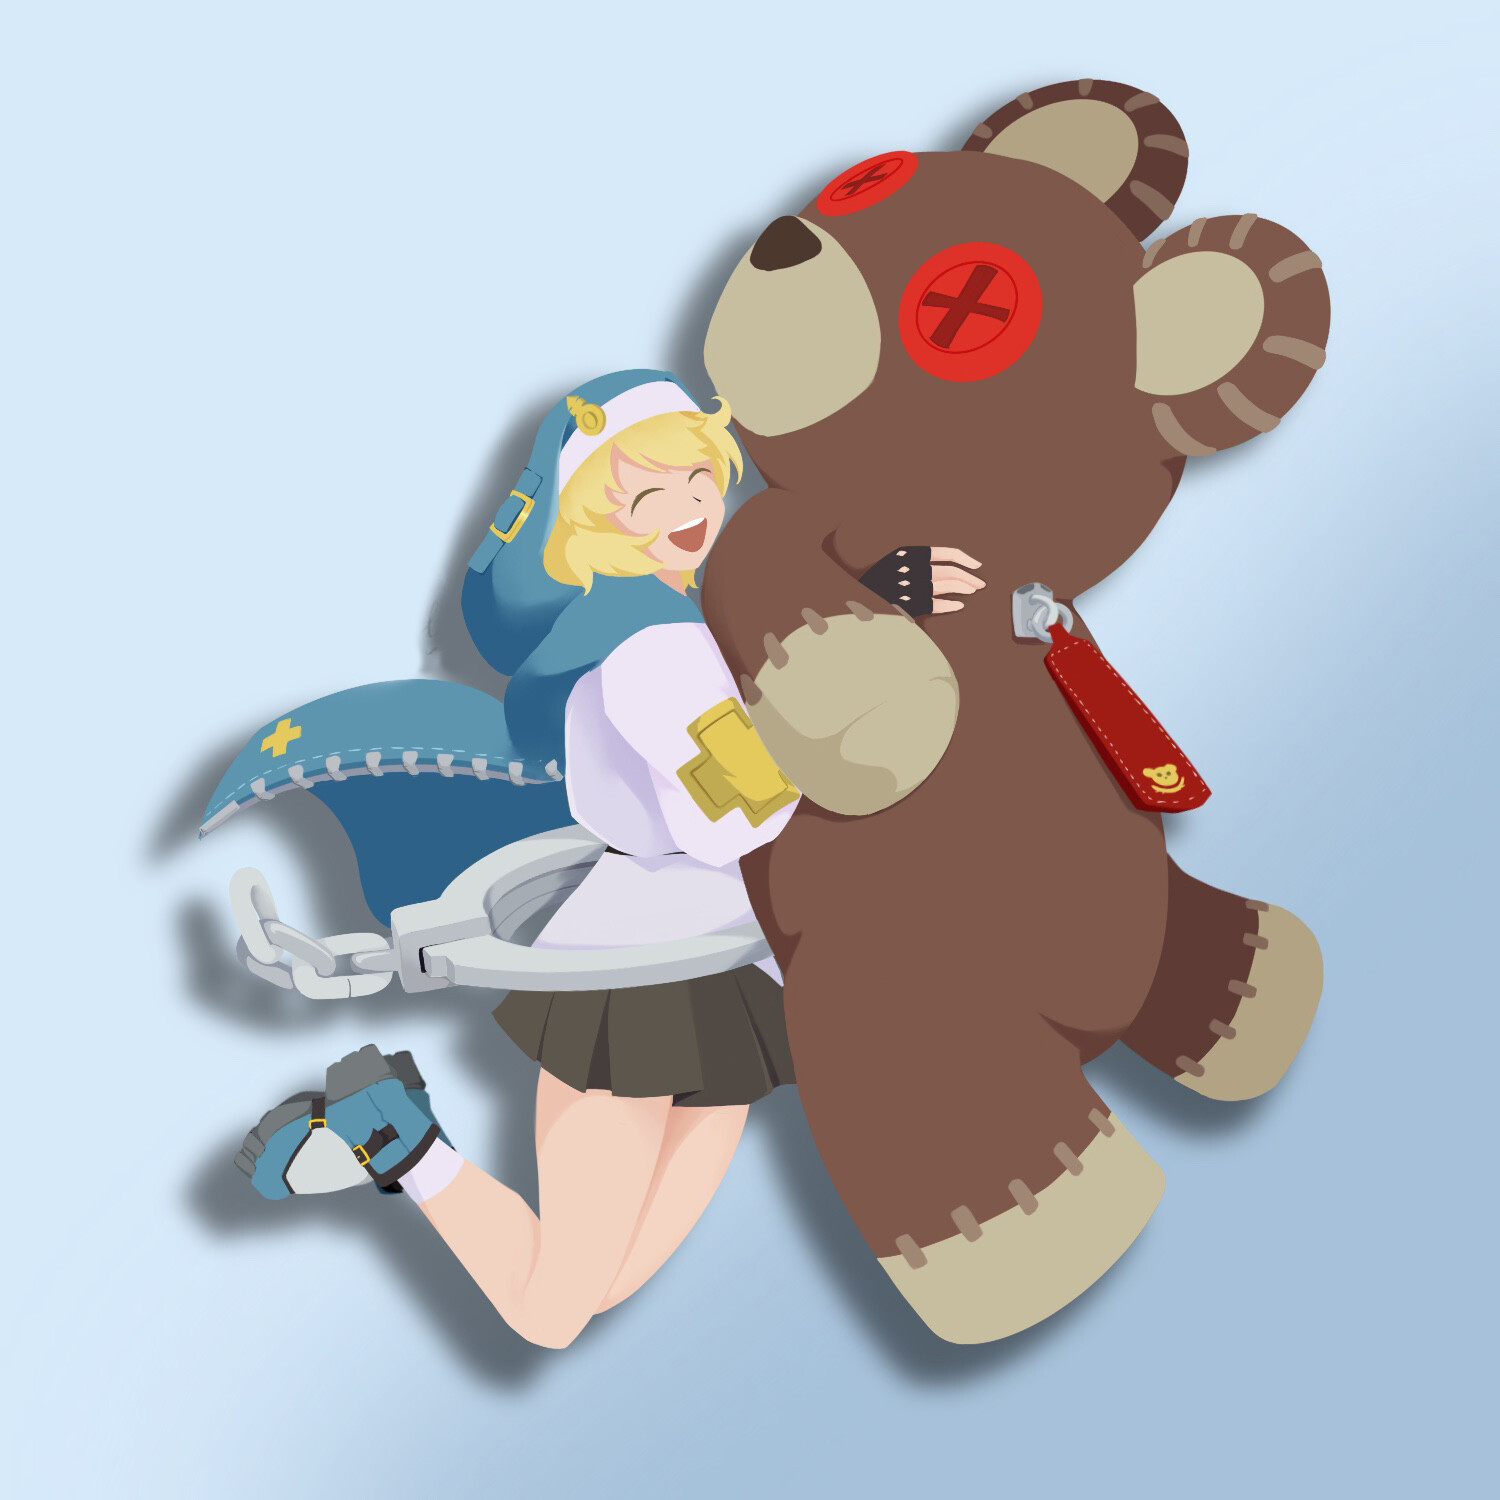 Bridget and a Teddy Bear? (Guilty Gear Strive fan-art) Funnily